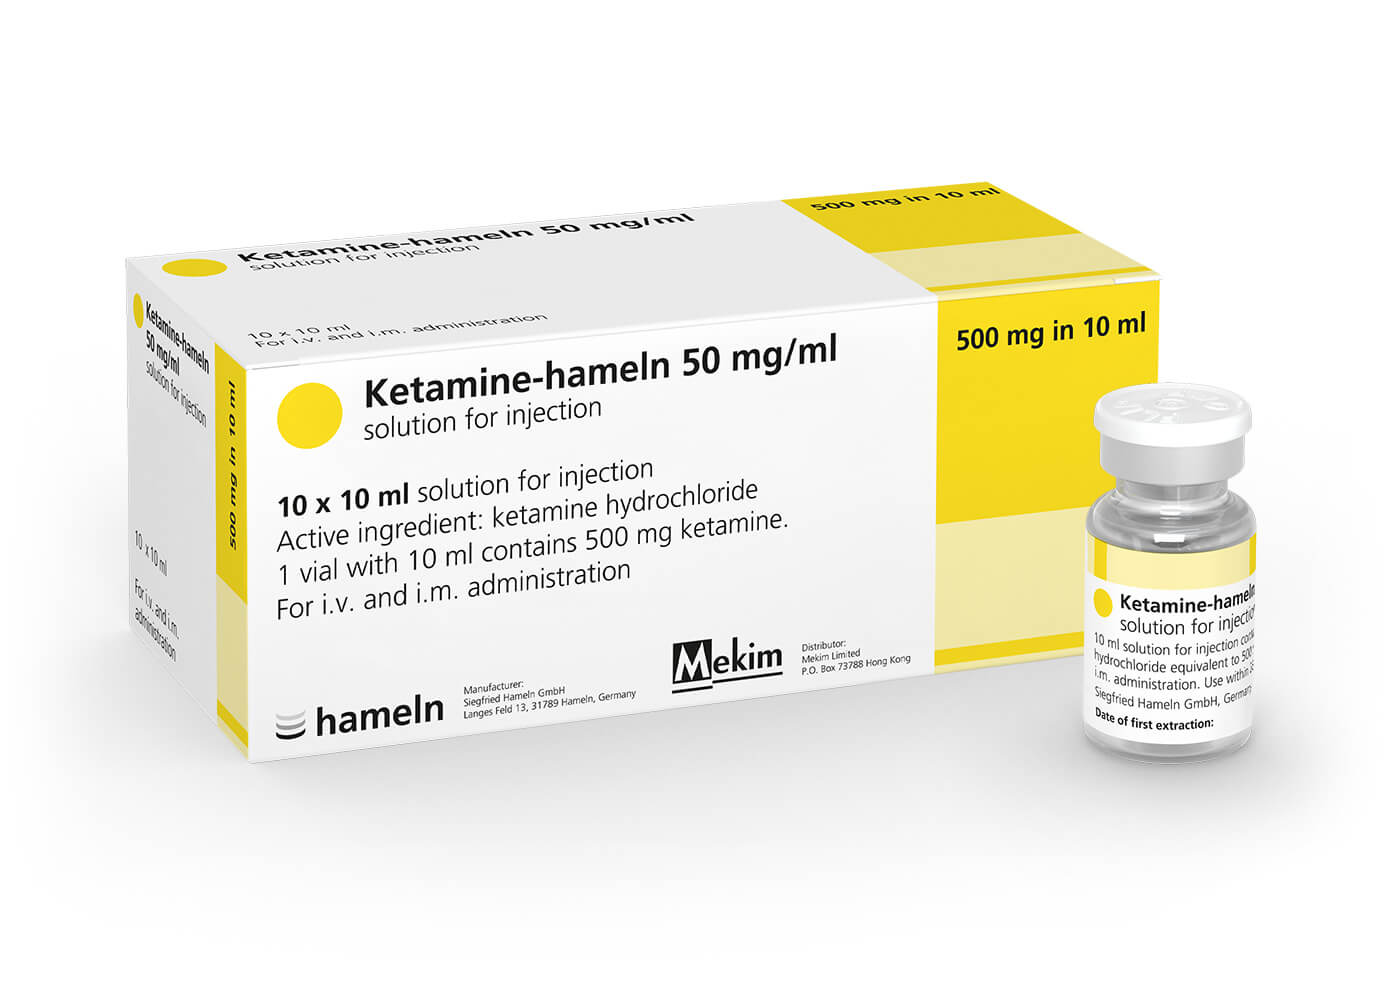 Ketamine_HK_50_mg-ml_in_10_ml_Pack_Vial_10St_SH_2020-05